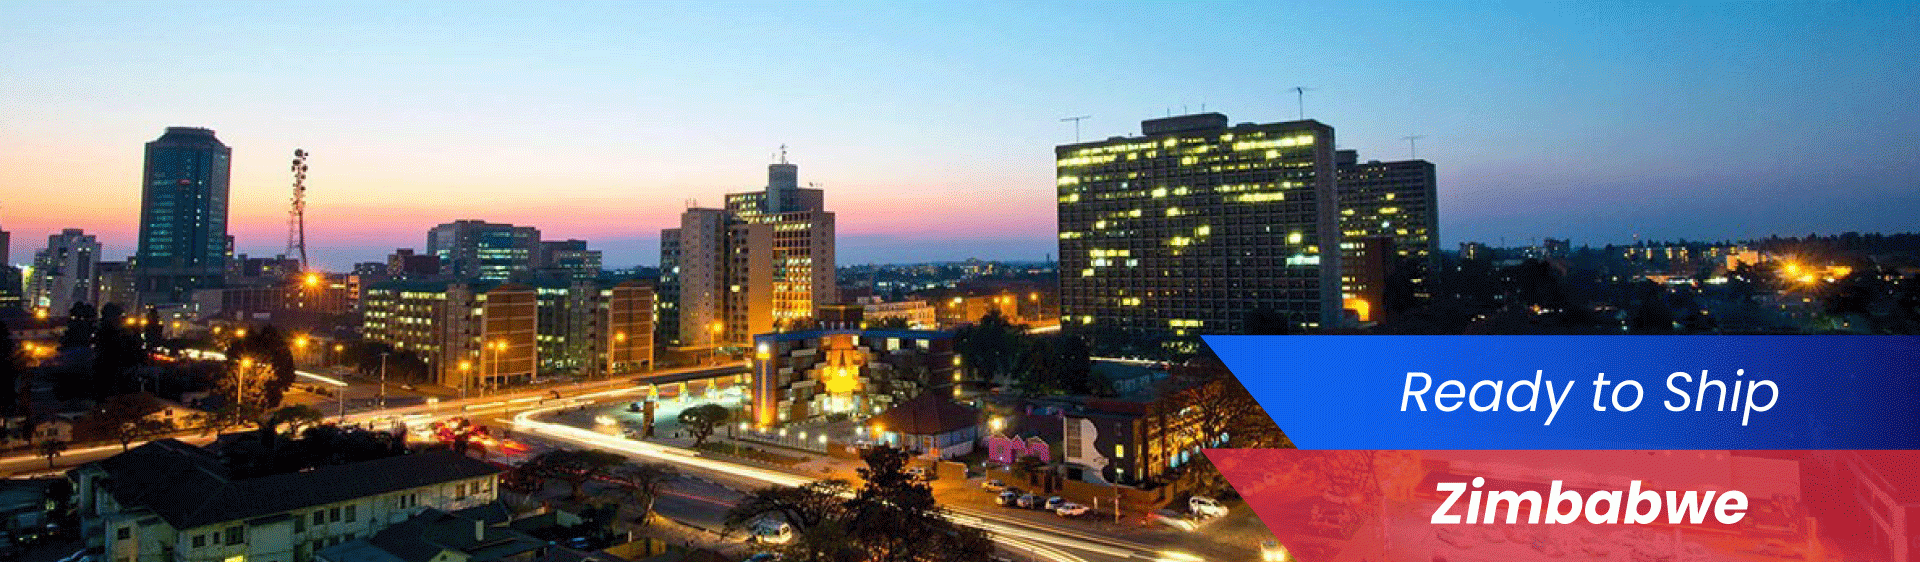 Zimbabwe Banner